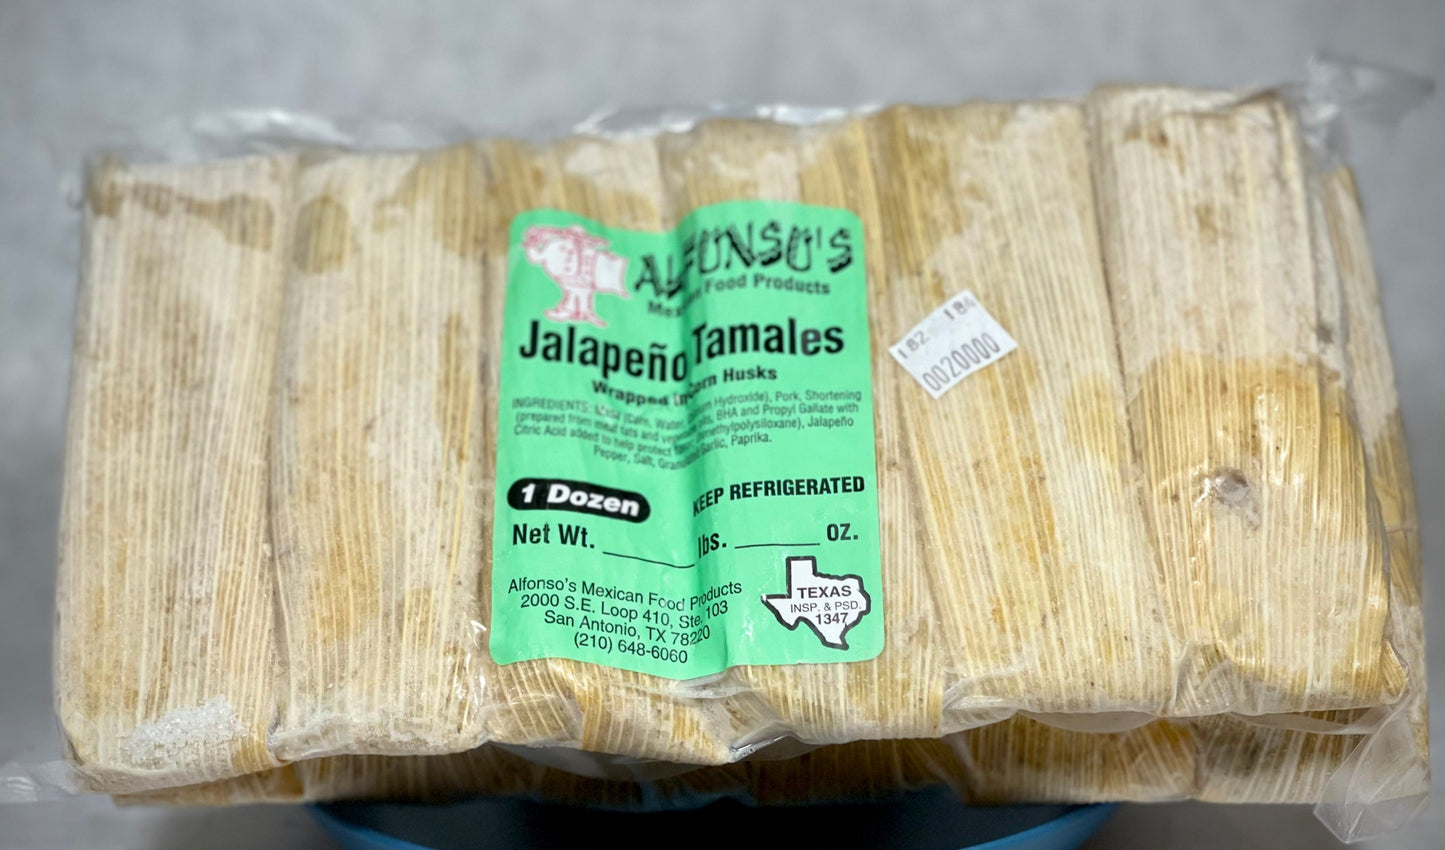 Handmade Pork + Jalapeño Tamales - Frozen - 1 Dozen